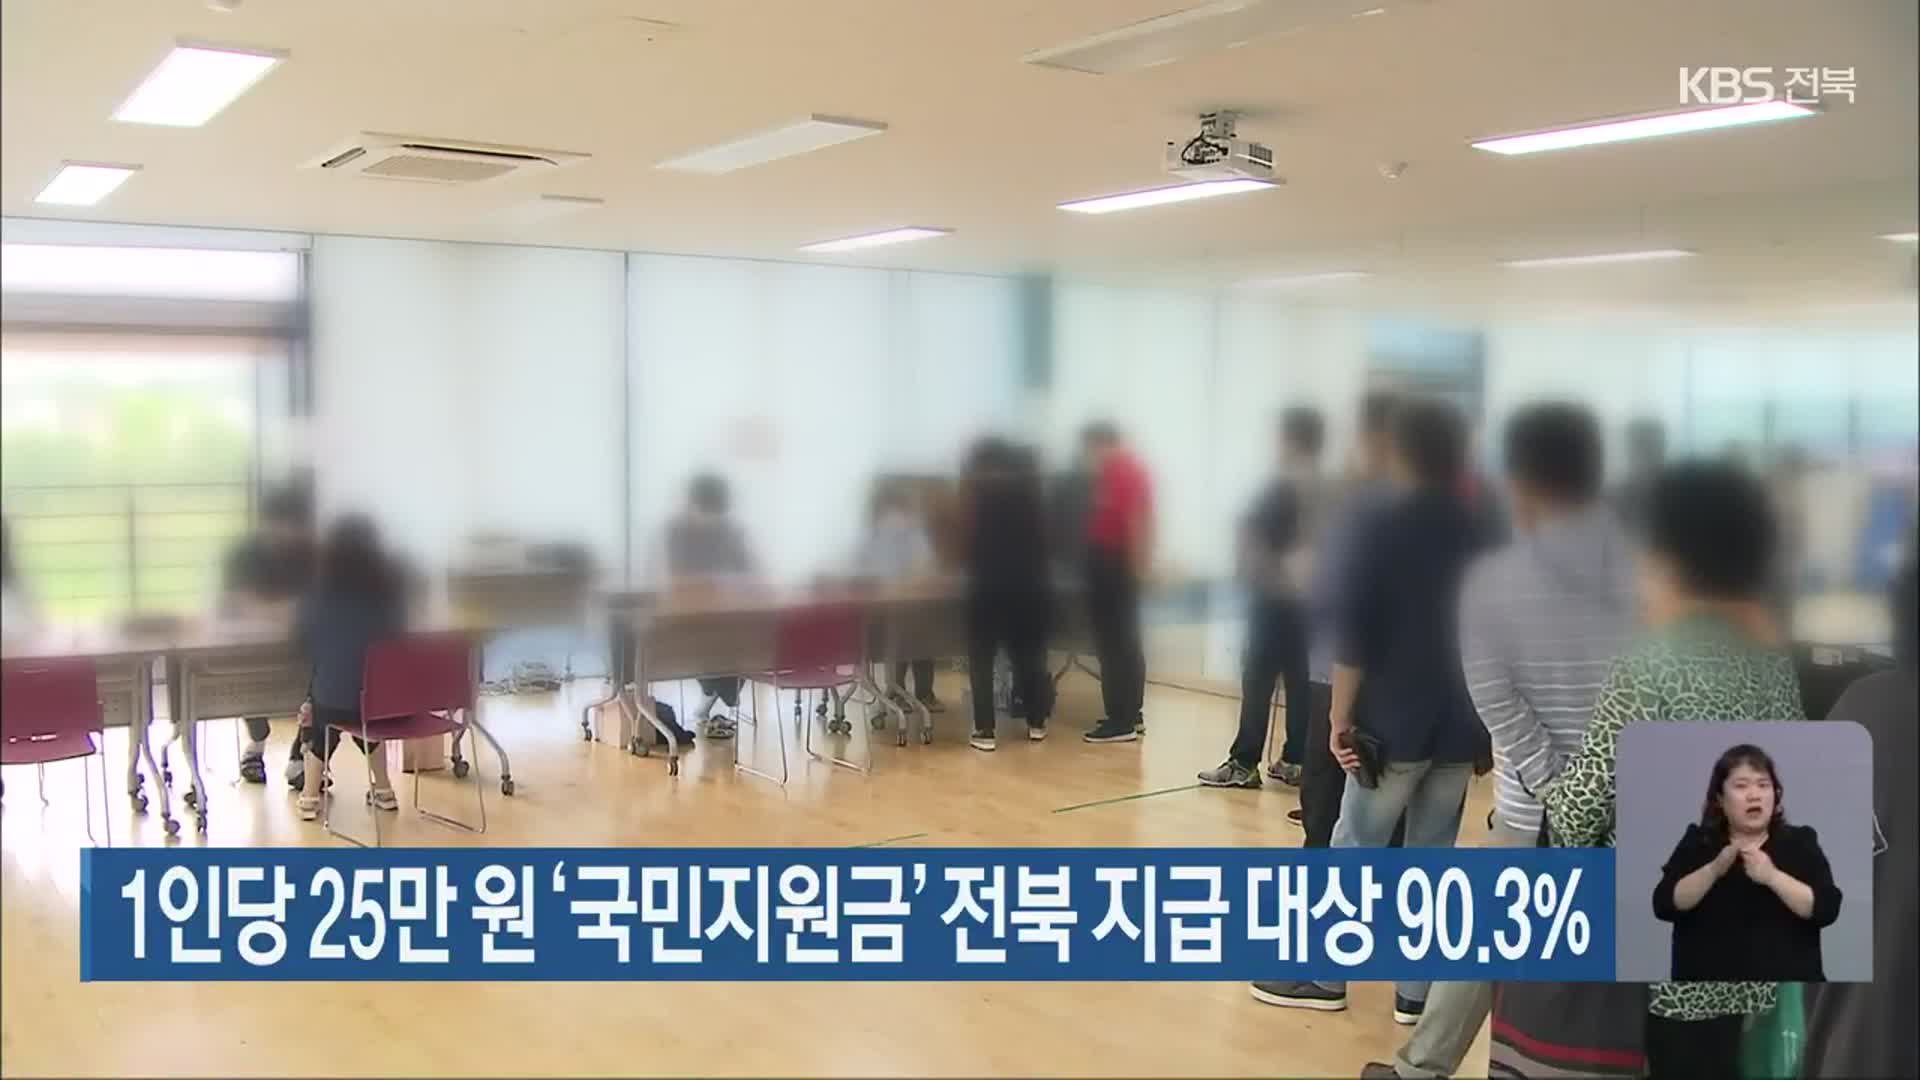 1인당 25만 원 ‘국민지원금’ 전북 지급 대상 90.3%